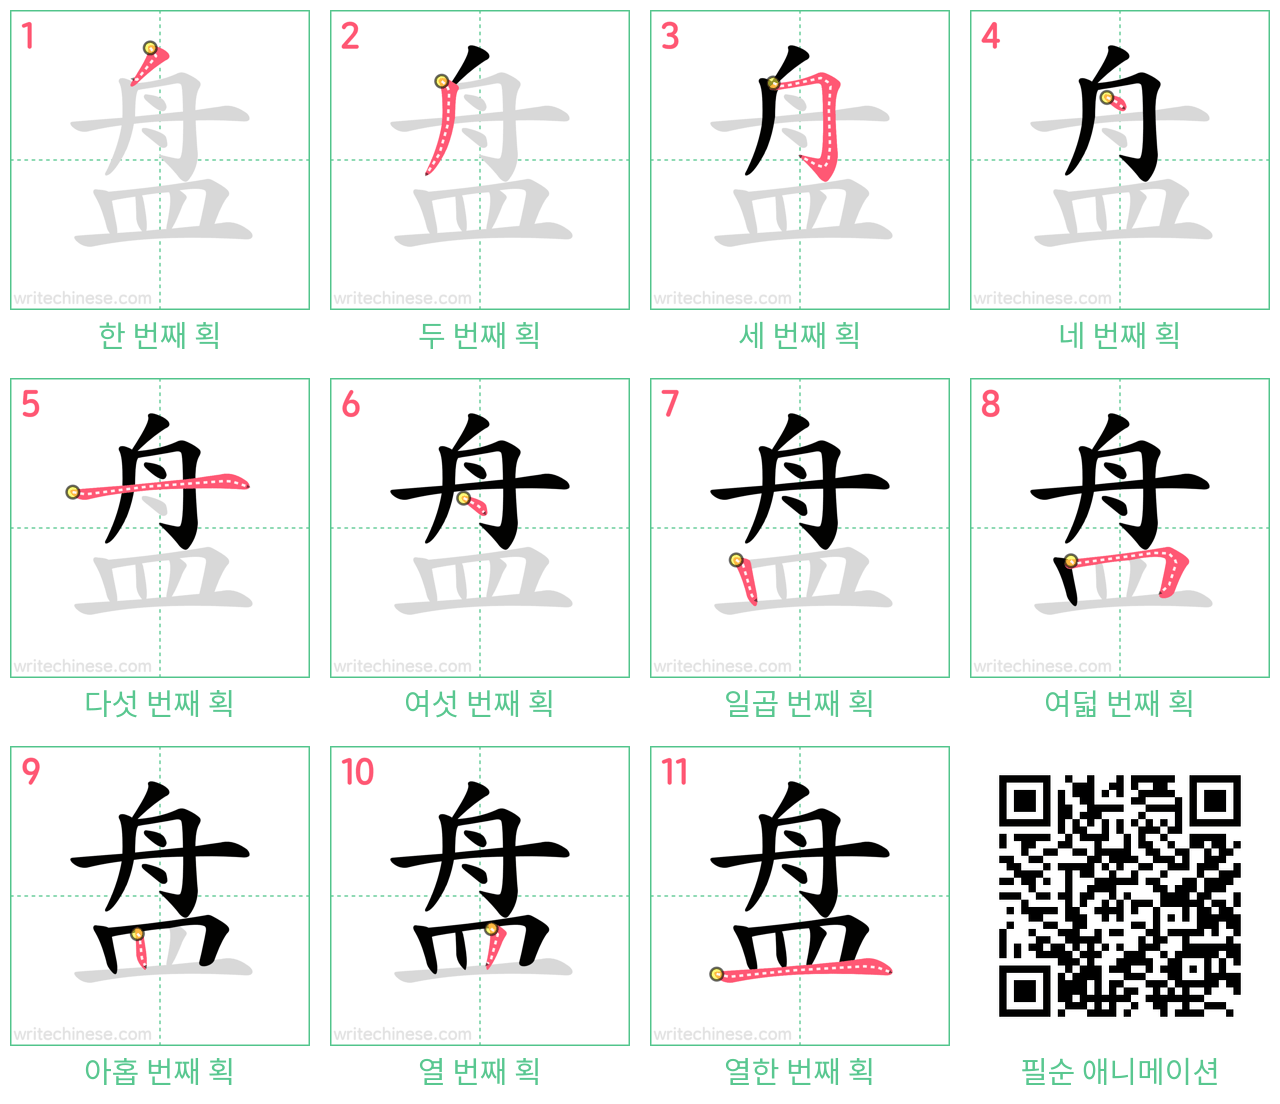 盘 step-by-step stroke order diagrams